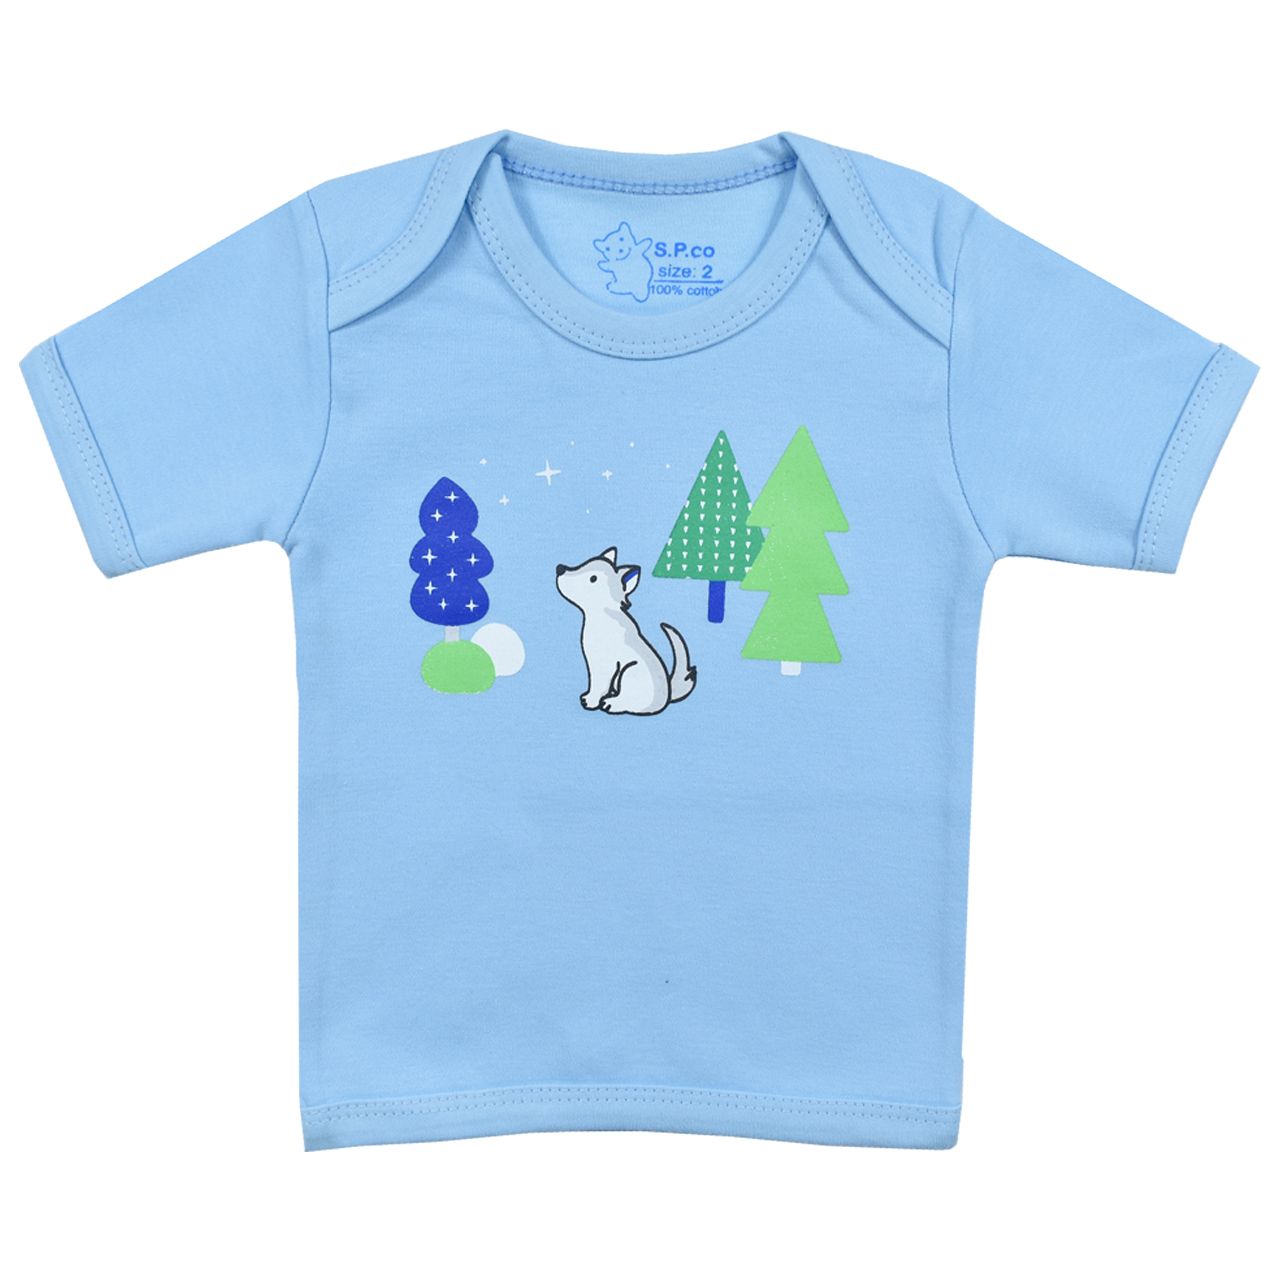 تی شرت آستین کوتاه نوزادی اسپیکو مدل کاج کد 2 -  - 1